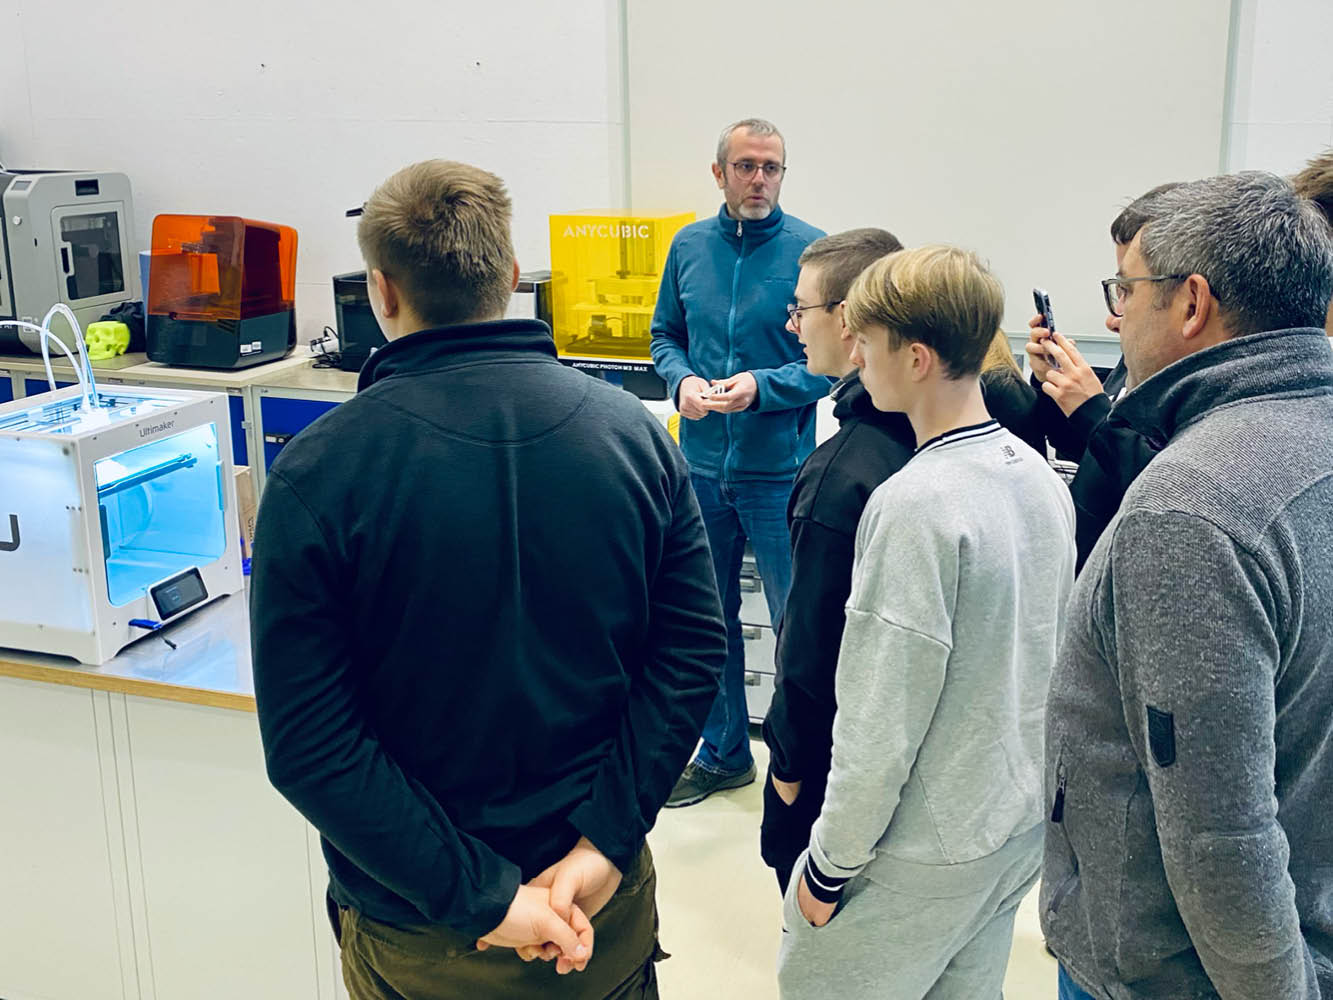 Schüler sehen sich einen 3-D-Drucker an, ein Labormitarbeiter erklärt dazu